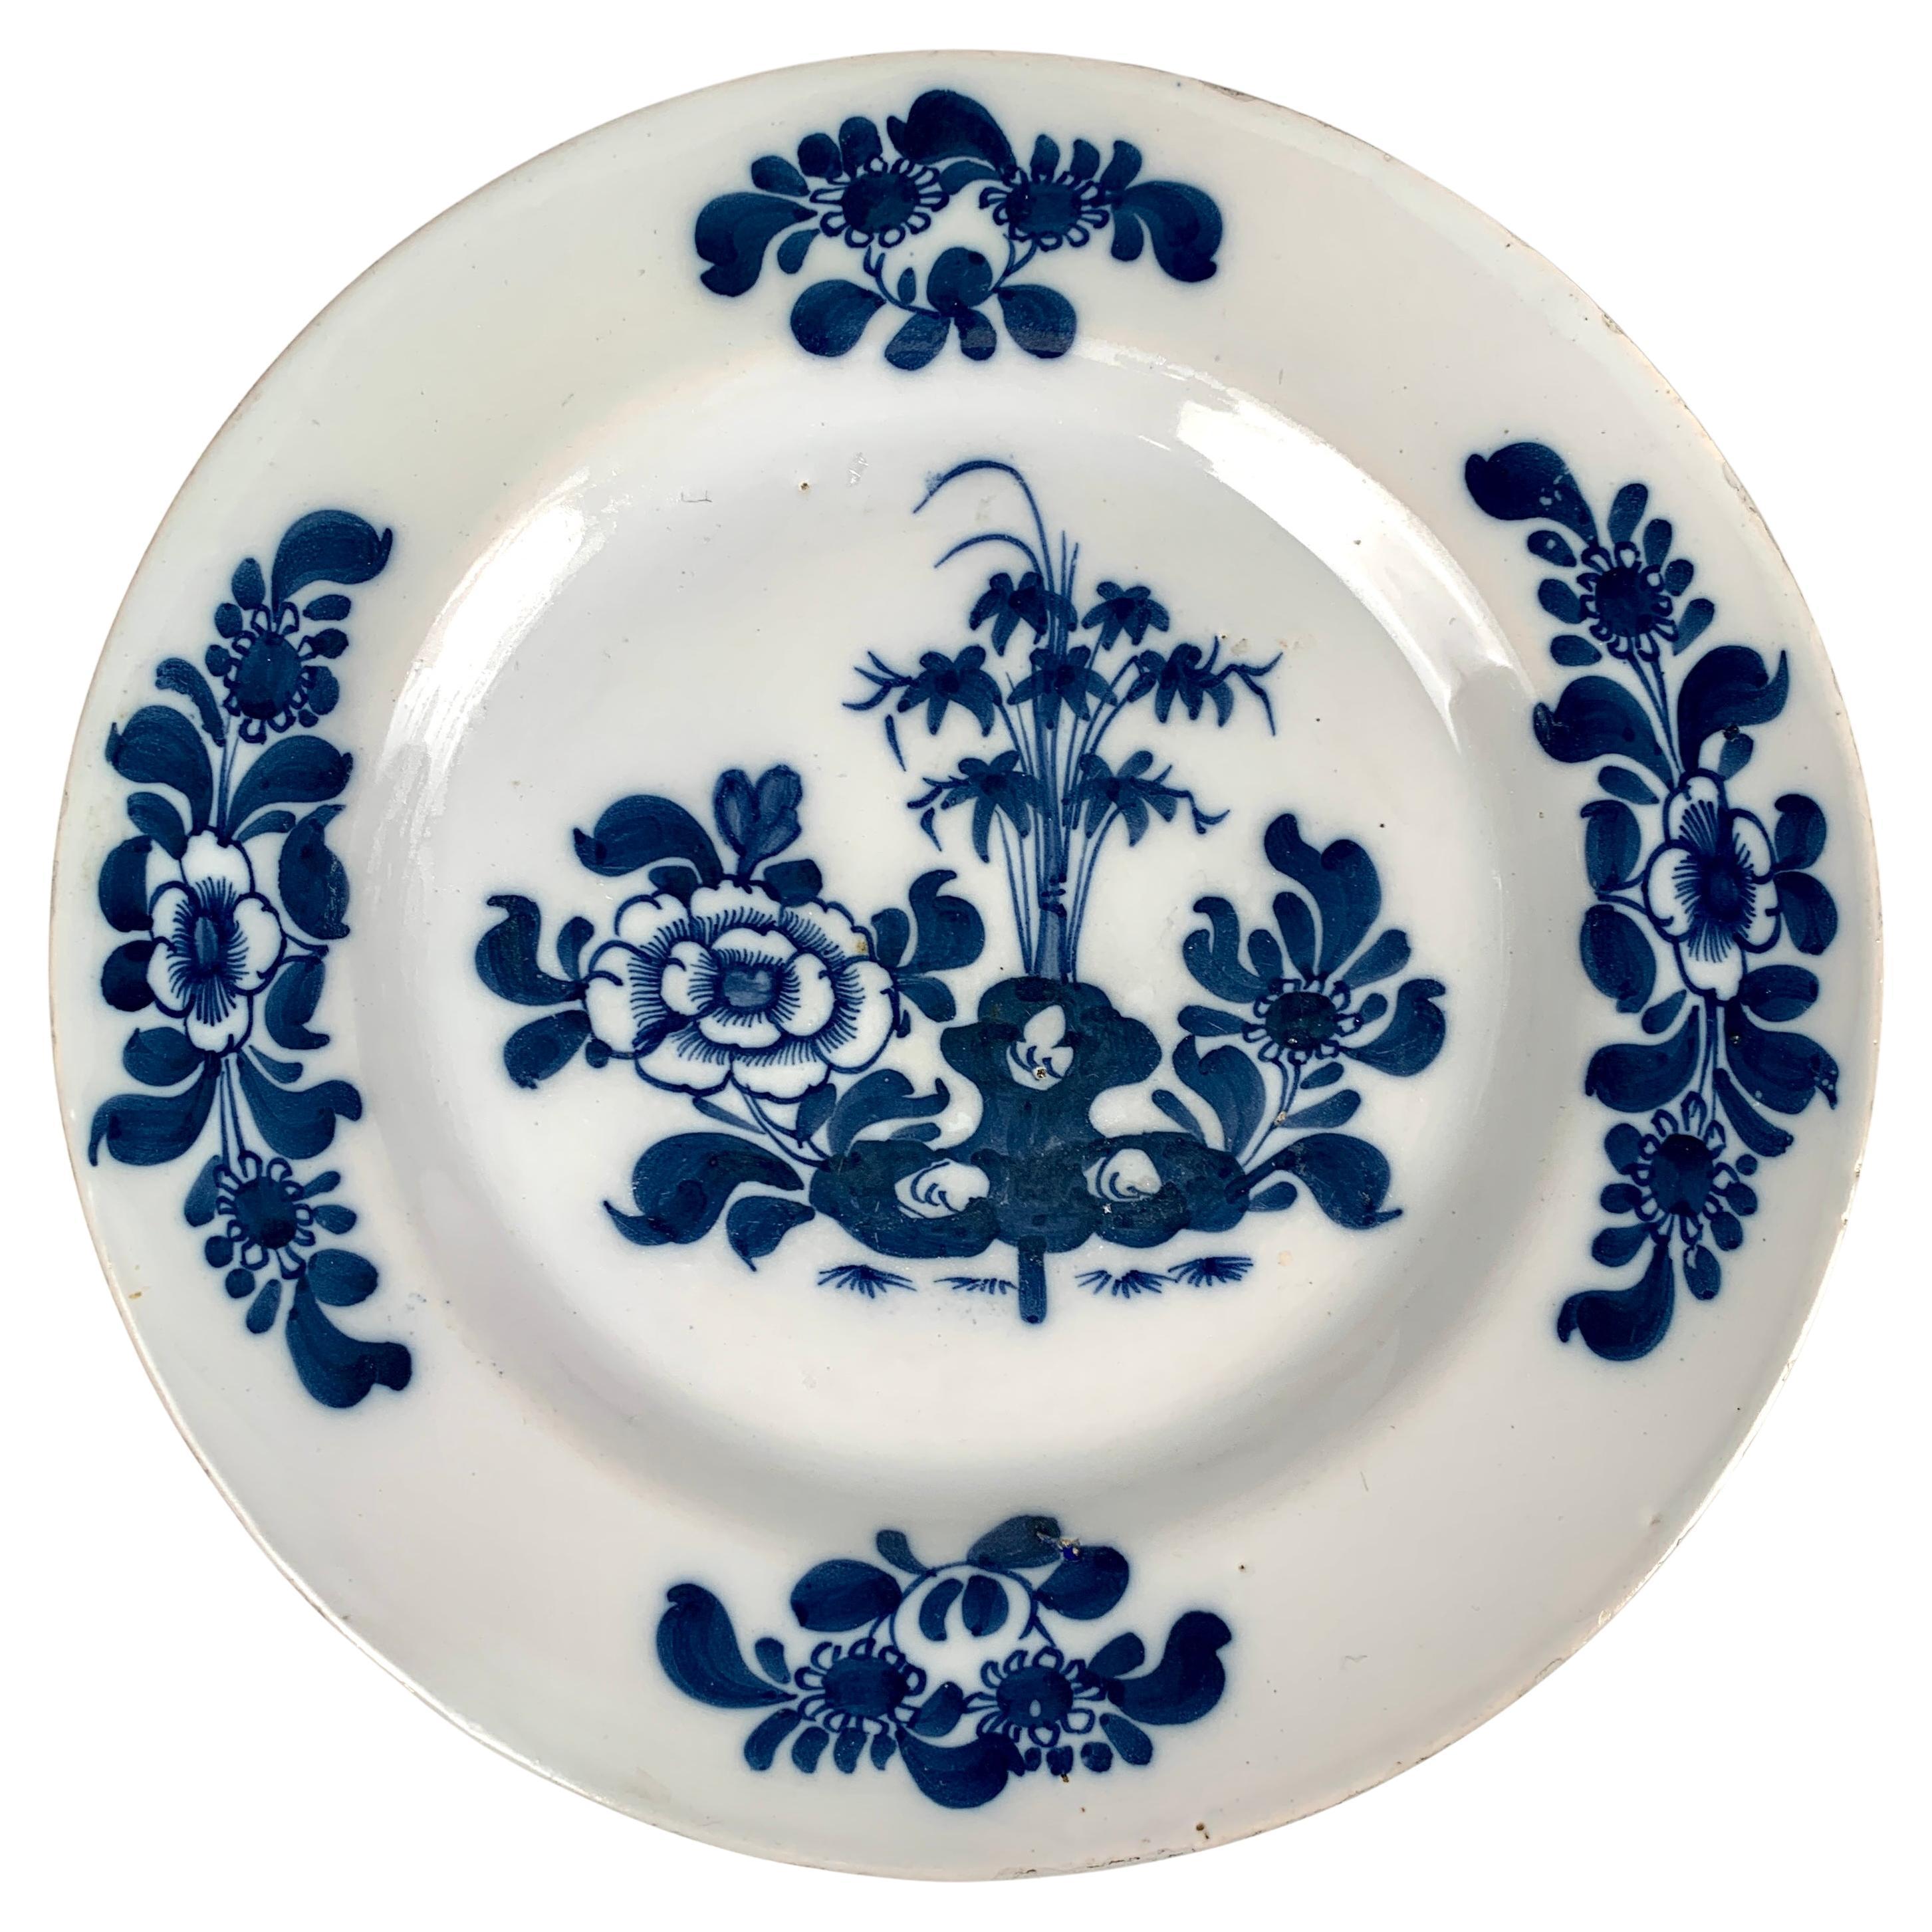 Dieses exquisite handbemalte Delfter Geschirr, das um 1760 in Bristol, England, hergestellt wurde und von chinesischem blau-weißem Porzellan inspiriert ist, ist ein perfektes Beispiel für die Kunstfertigkeit und Kreativität der englischen Delfter